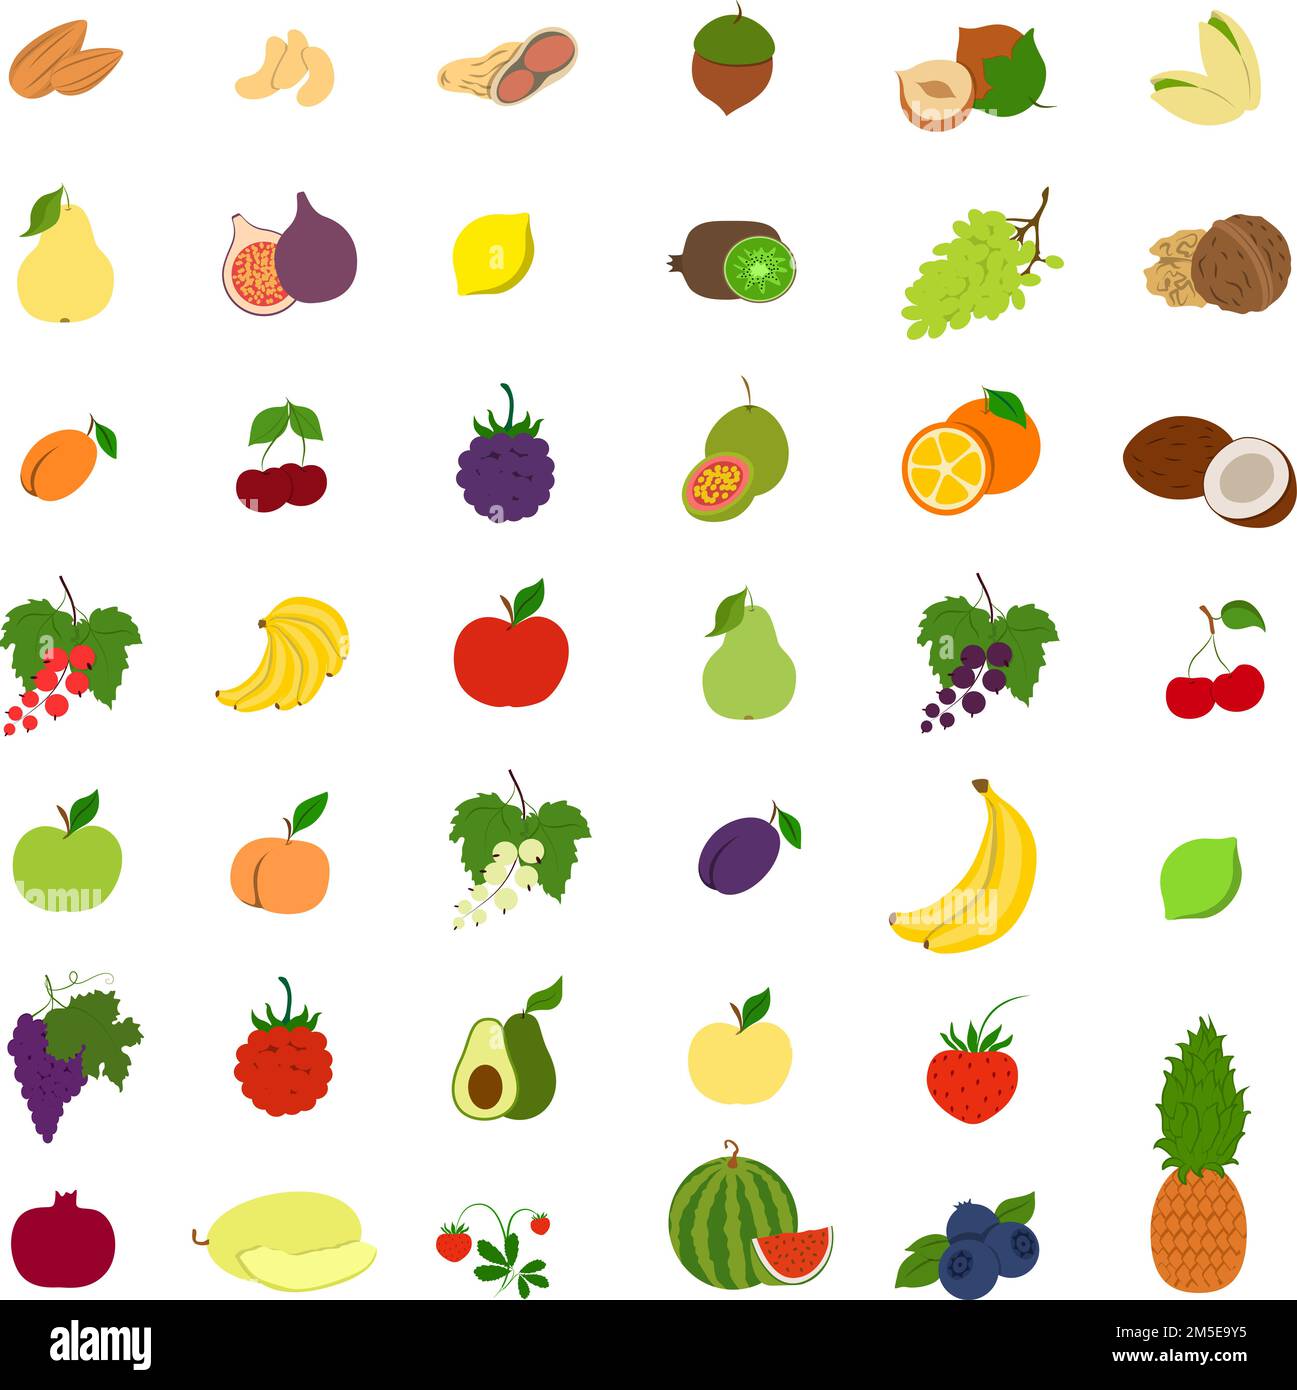 Obst-Illustrationen sind fertig. Bananen und Äpfel, Pflaumen und Birnen und mehr. Stock Vektor